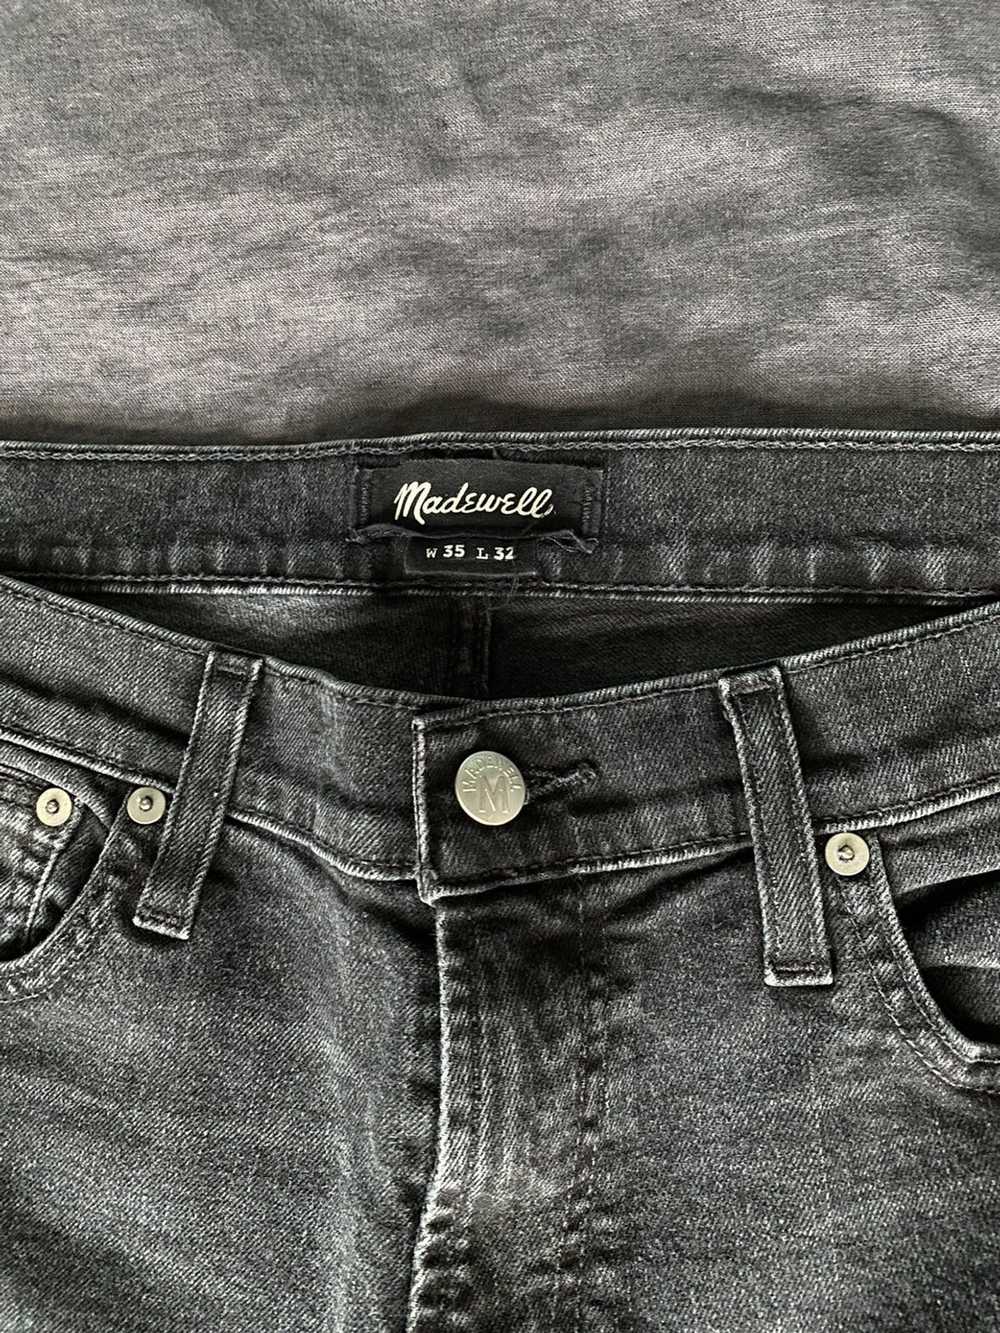 Madewell Black Slim Jeans - 35x32 - image 4